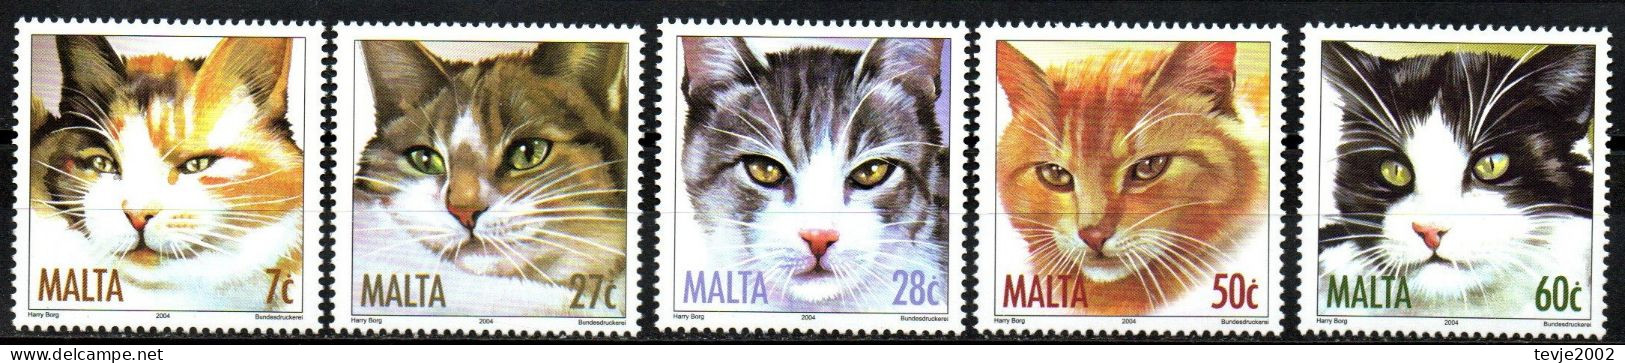 Malta 2004 - Mi.Nr. 1319 - 1323 - Postfrisch MNH - Tiere Animals Katzen Cats - Katten